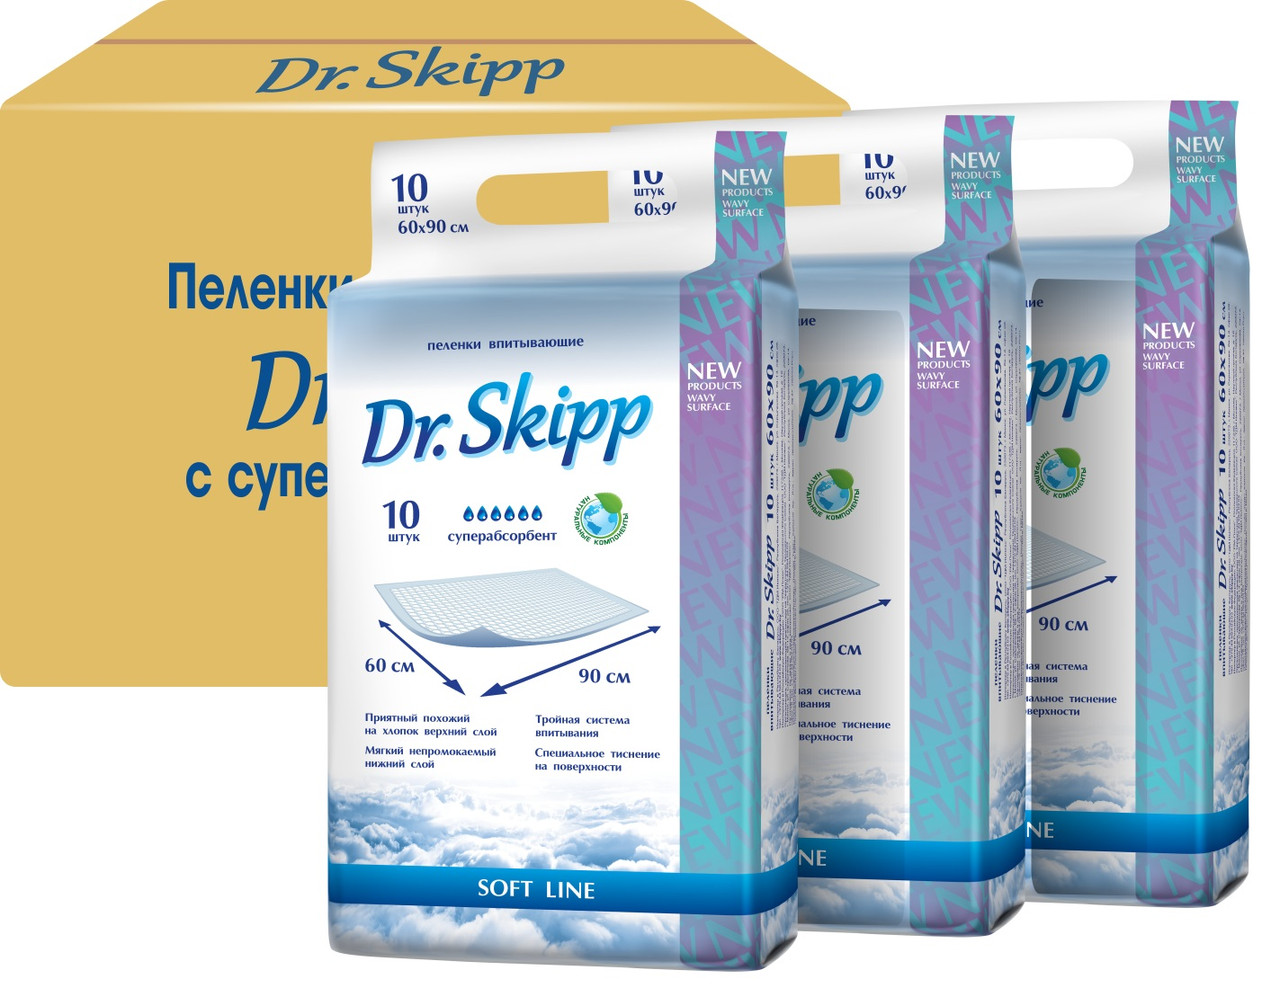 Одноразовые впитывающие пеленки Dr. Skipp 60х90 см, 30 шт., (Набор)